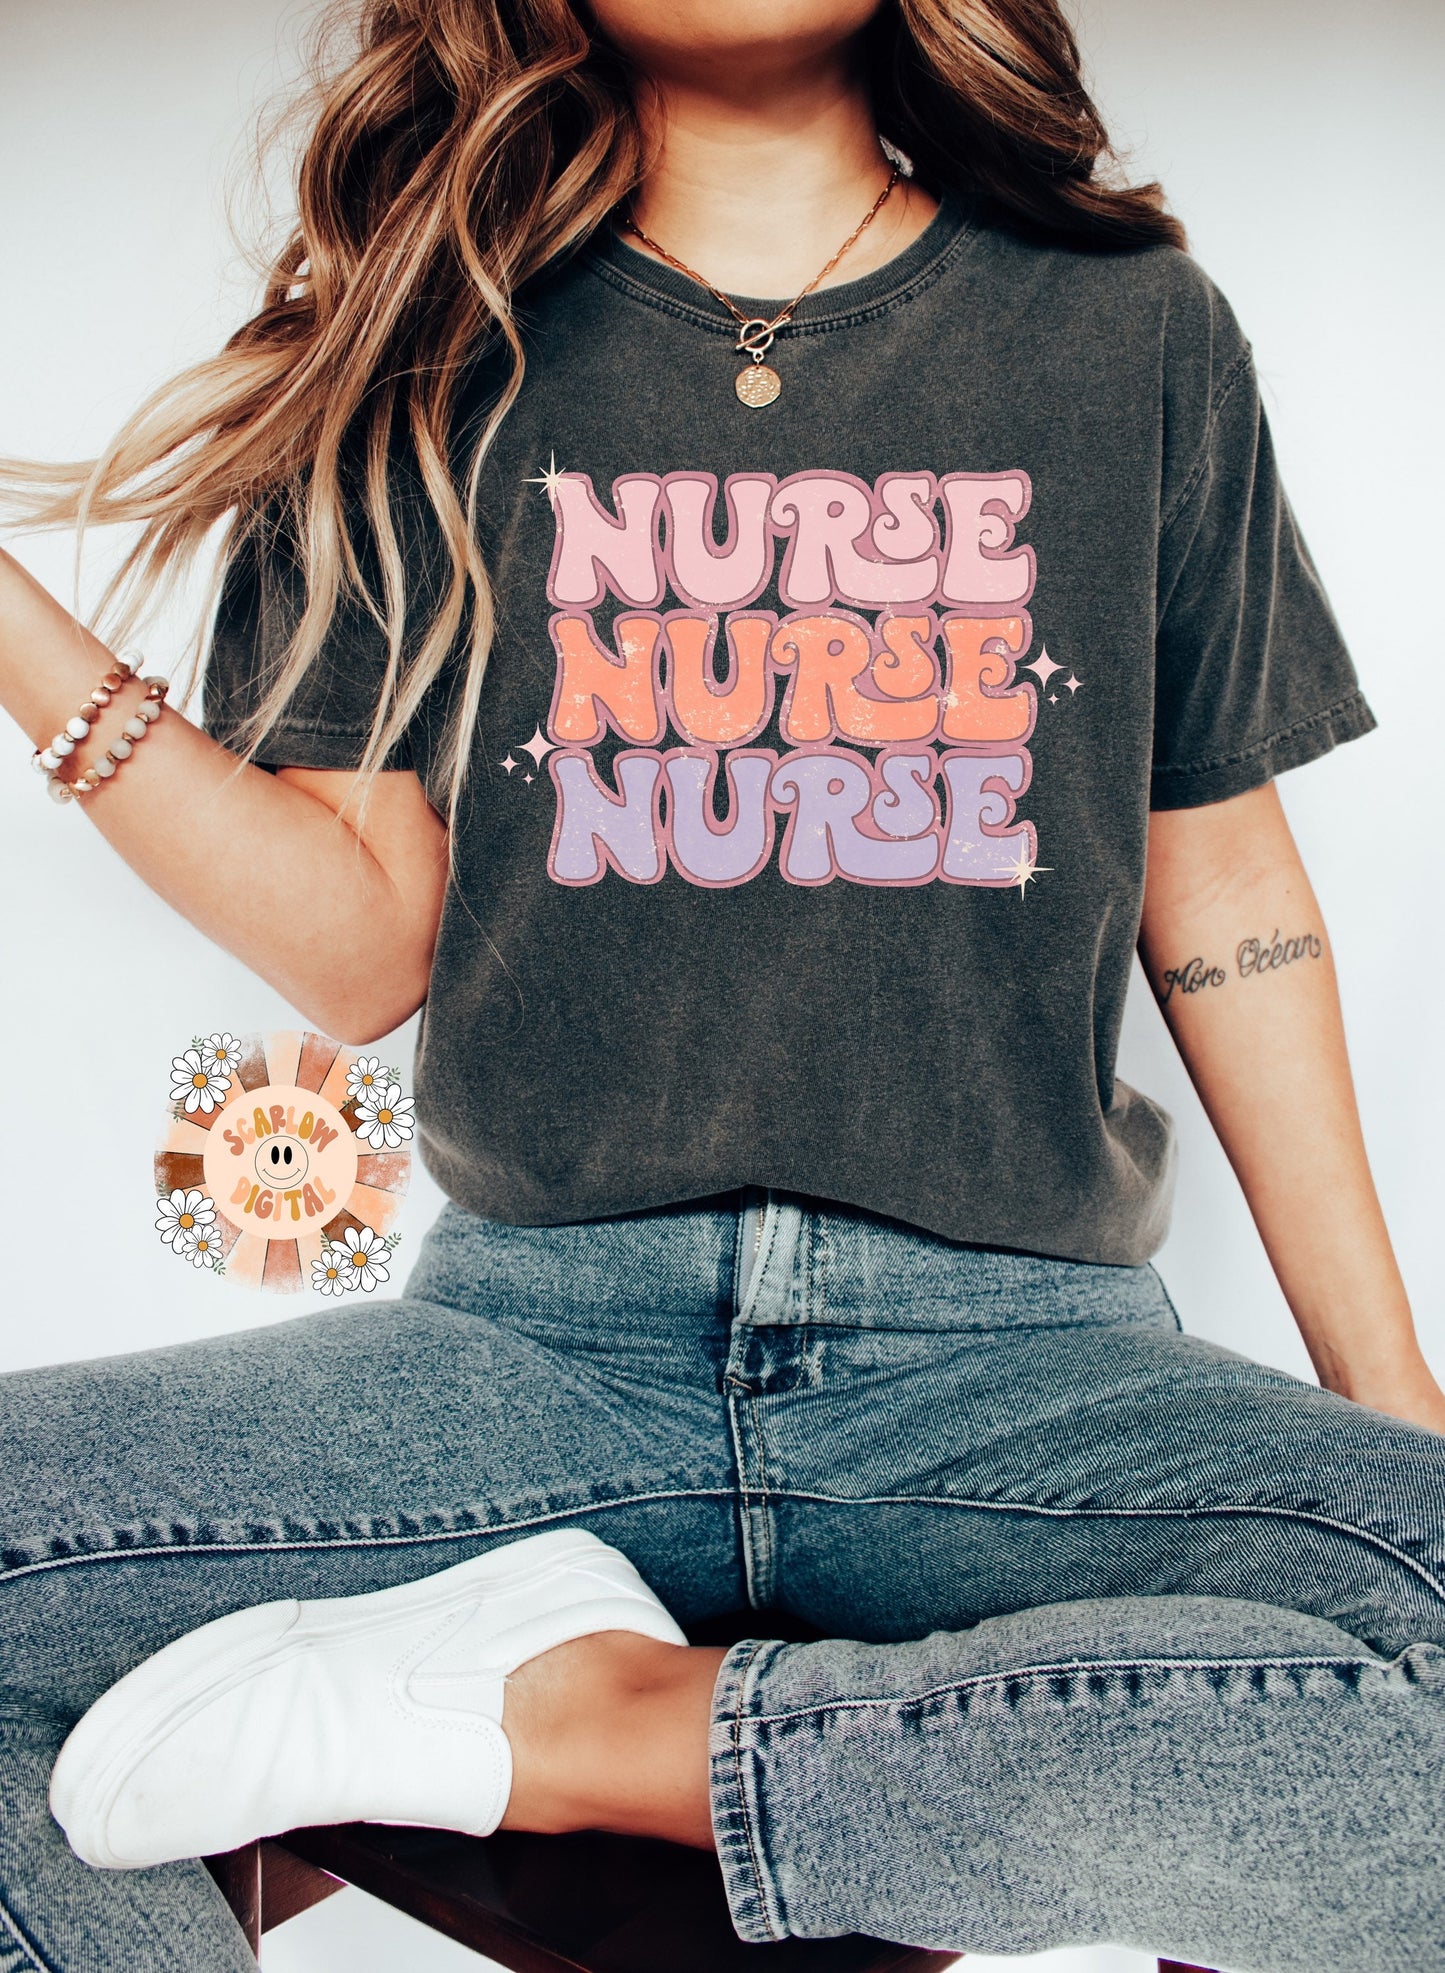 Nurse PNG-Vintage Sublimation Digital Design Download-retro nurse png, nurse tshirt design, boho nurse png, png for nurses, healthcare png